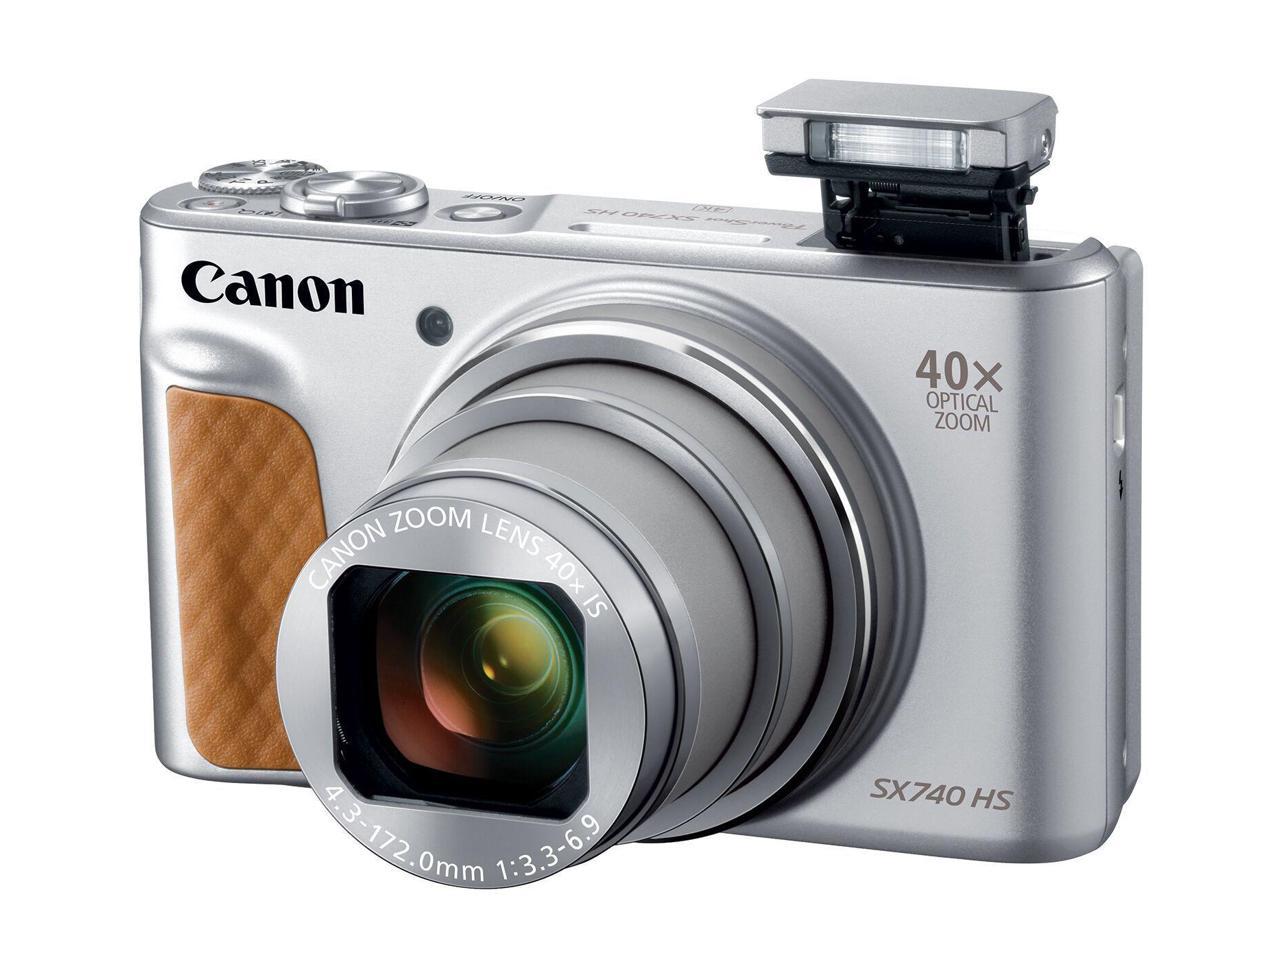 Canon Sx740sl Powershot Sx740 Hs Digital Camera Silver Newegg Com